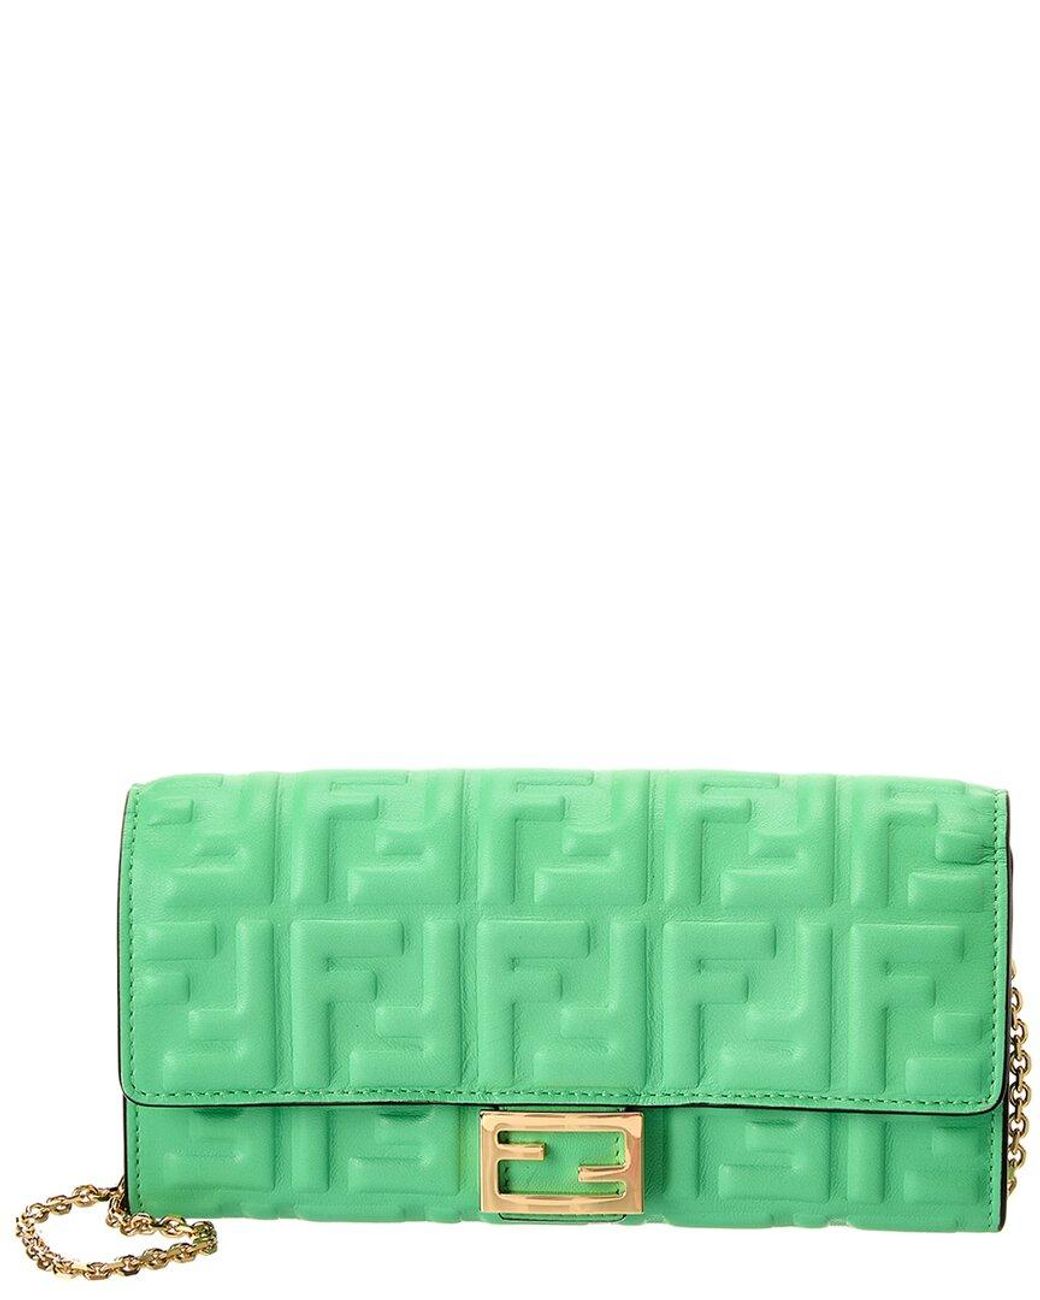 Fendi Baguette Leather Wallet On Chain in Green | Lyst